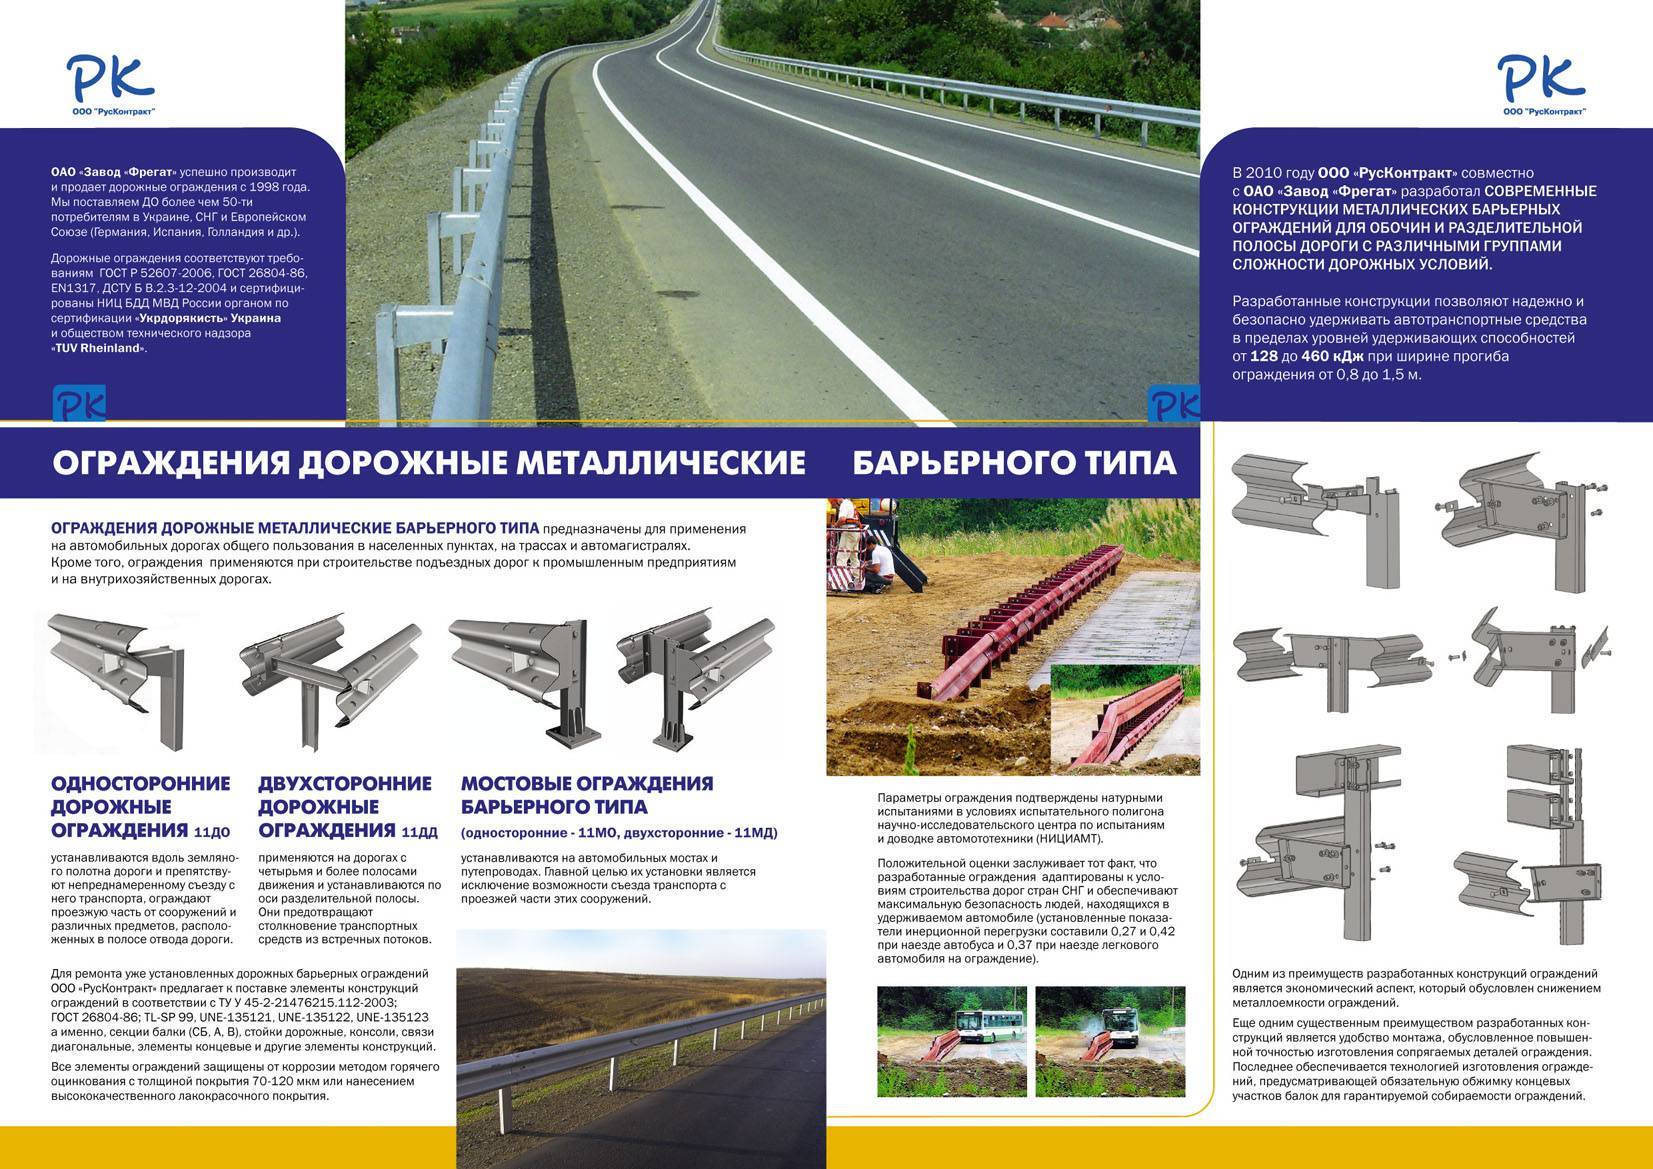 Металлические дорожные ограждения барьерного типа — sdelayzabor.ru